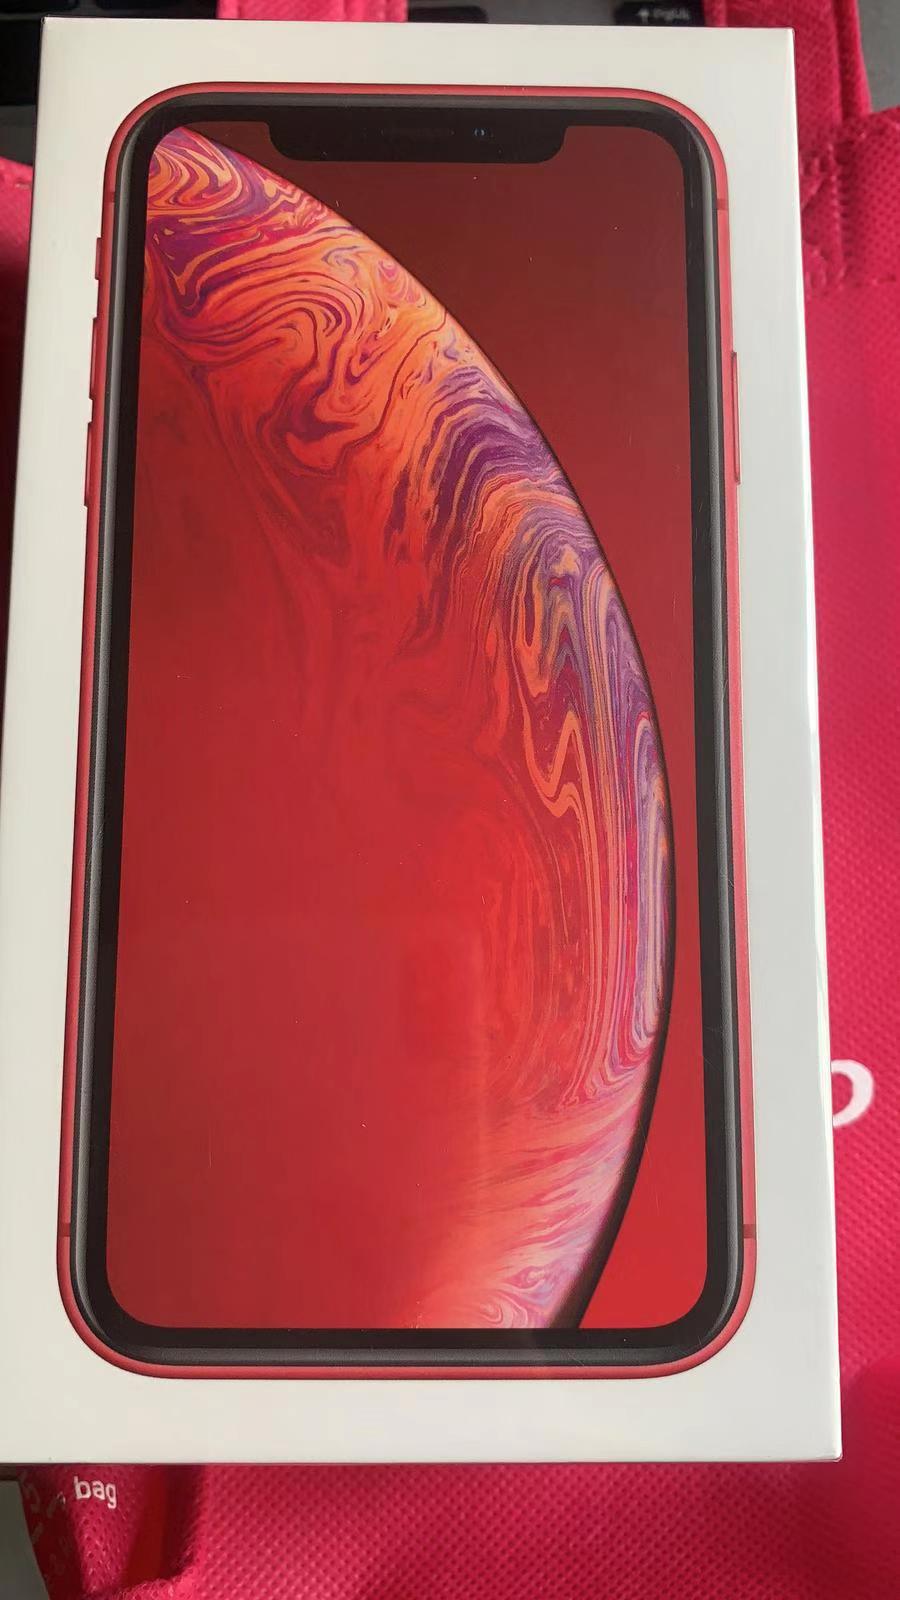 全新的iphonexr红色 128gb没激活 没开封 价格1150